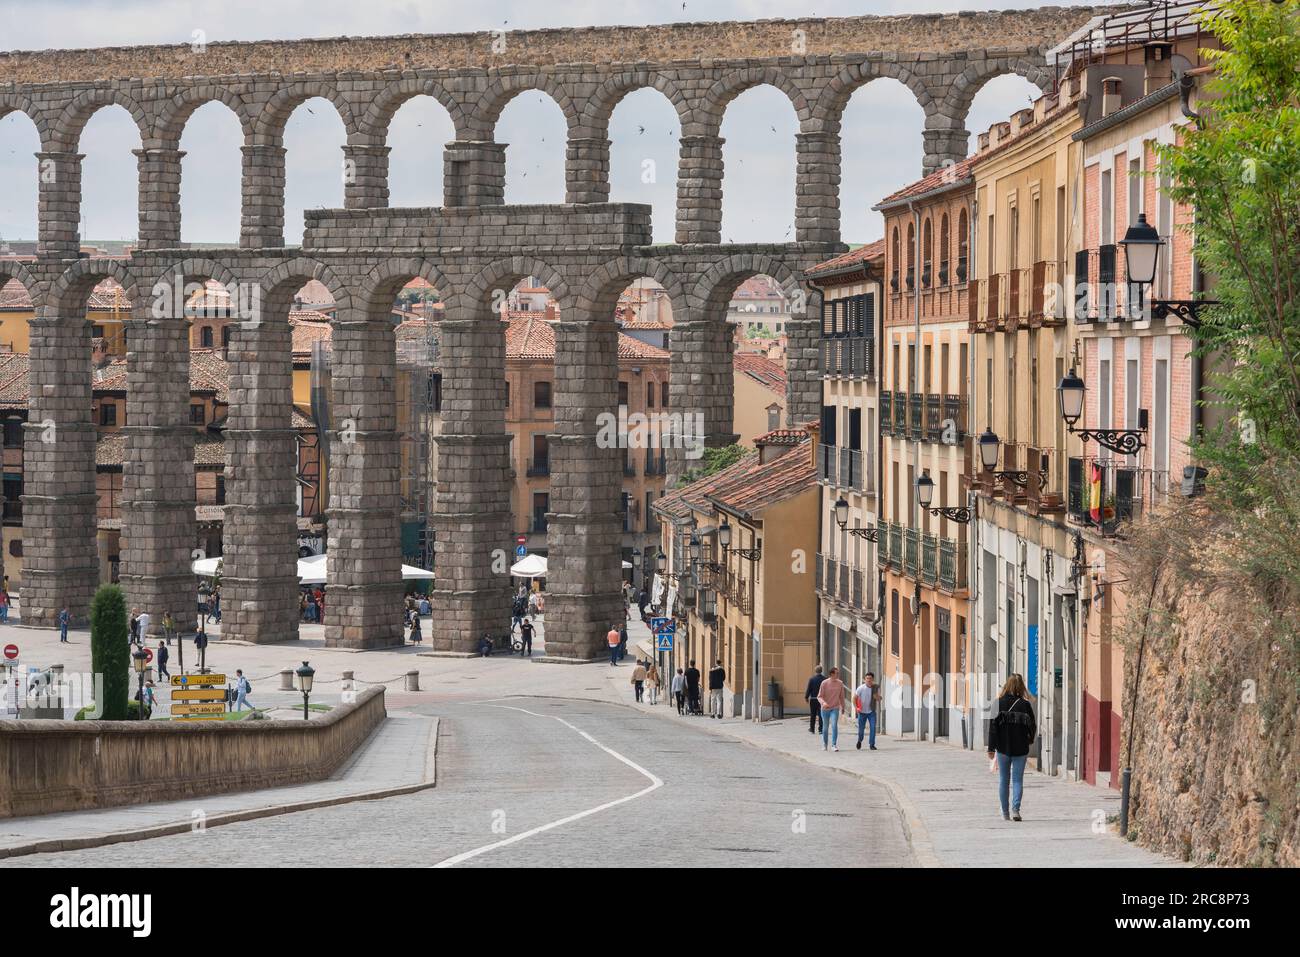 Römische Architektur Segovia, Blick entlang der Calle San Juan in Richtung des römischen Aquädukts aus dem 1. Jahrhundert, das die historische Stadt Segovia, Zentralspanien, umspannt Stockfoto